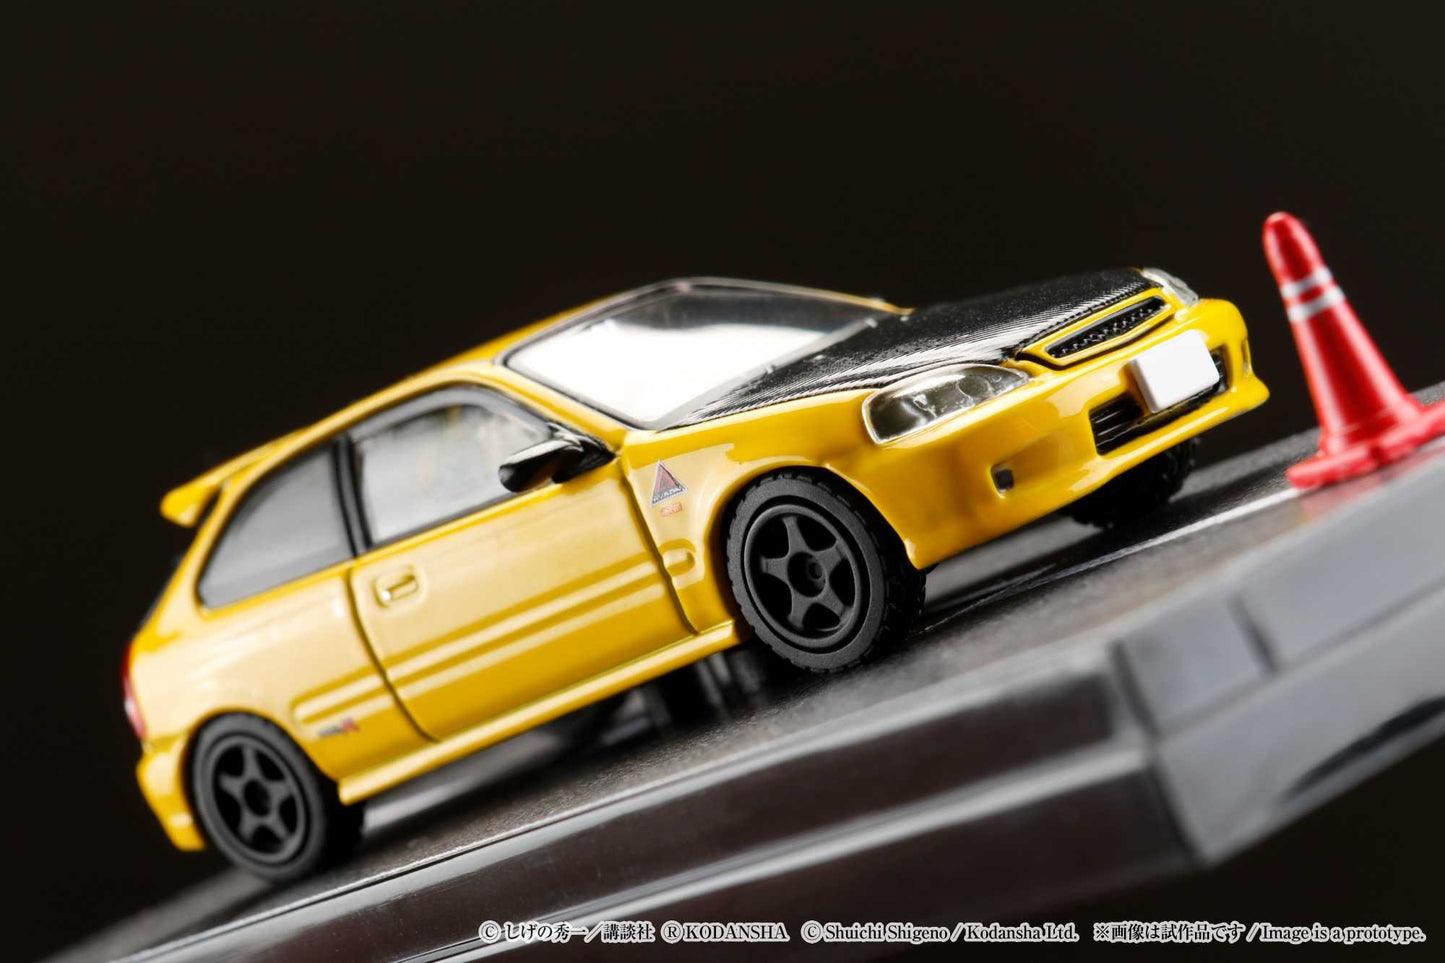 Hobby Japan 1/64 Honda CIVIC (EK9) Todo-Juku / Tomoyuki Tachi (INITIAL D: Diorama Set with Driver Figure)